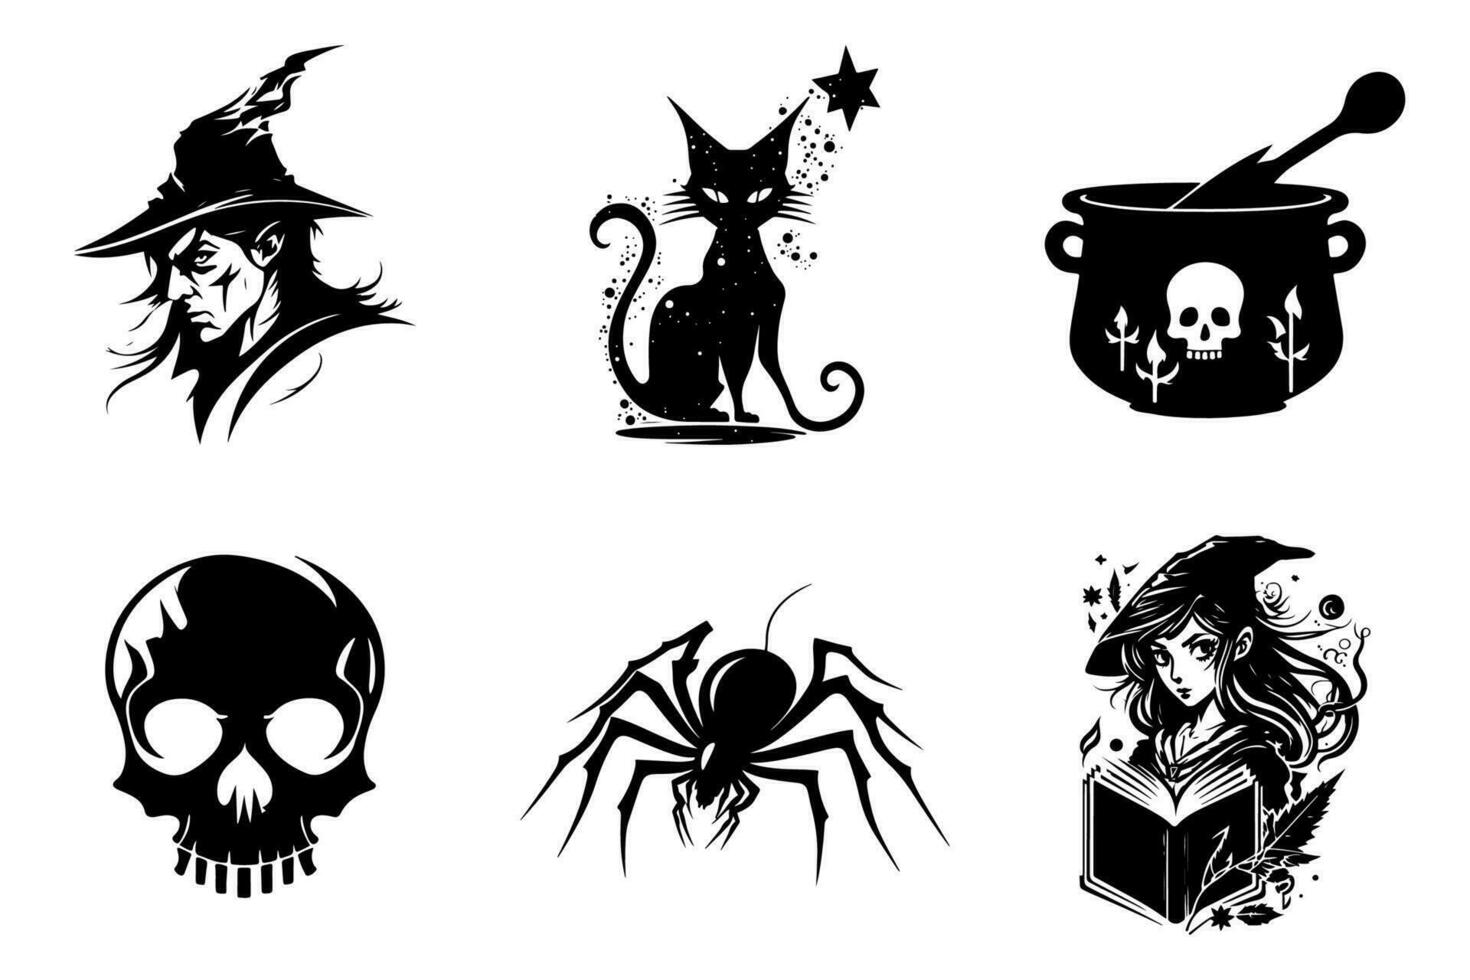 skrämmande Spindel, skalle, svart katt, magi pott, häxa och trollkarl - halloween grafik uppsättning, svart och vit, isolerat. vektor